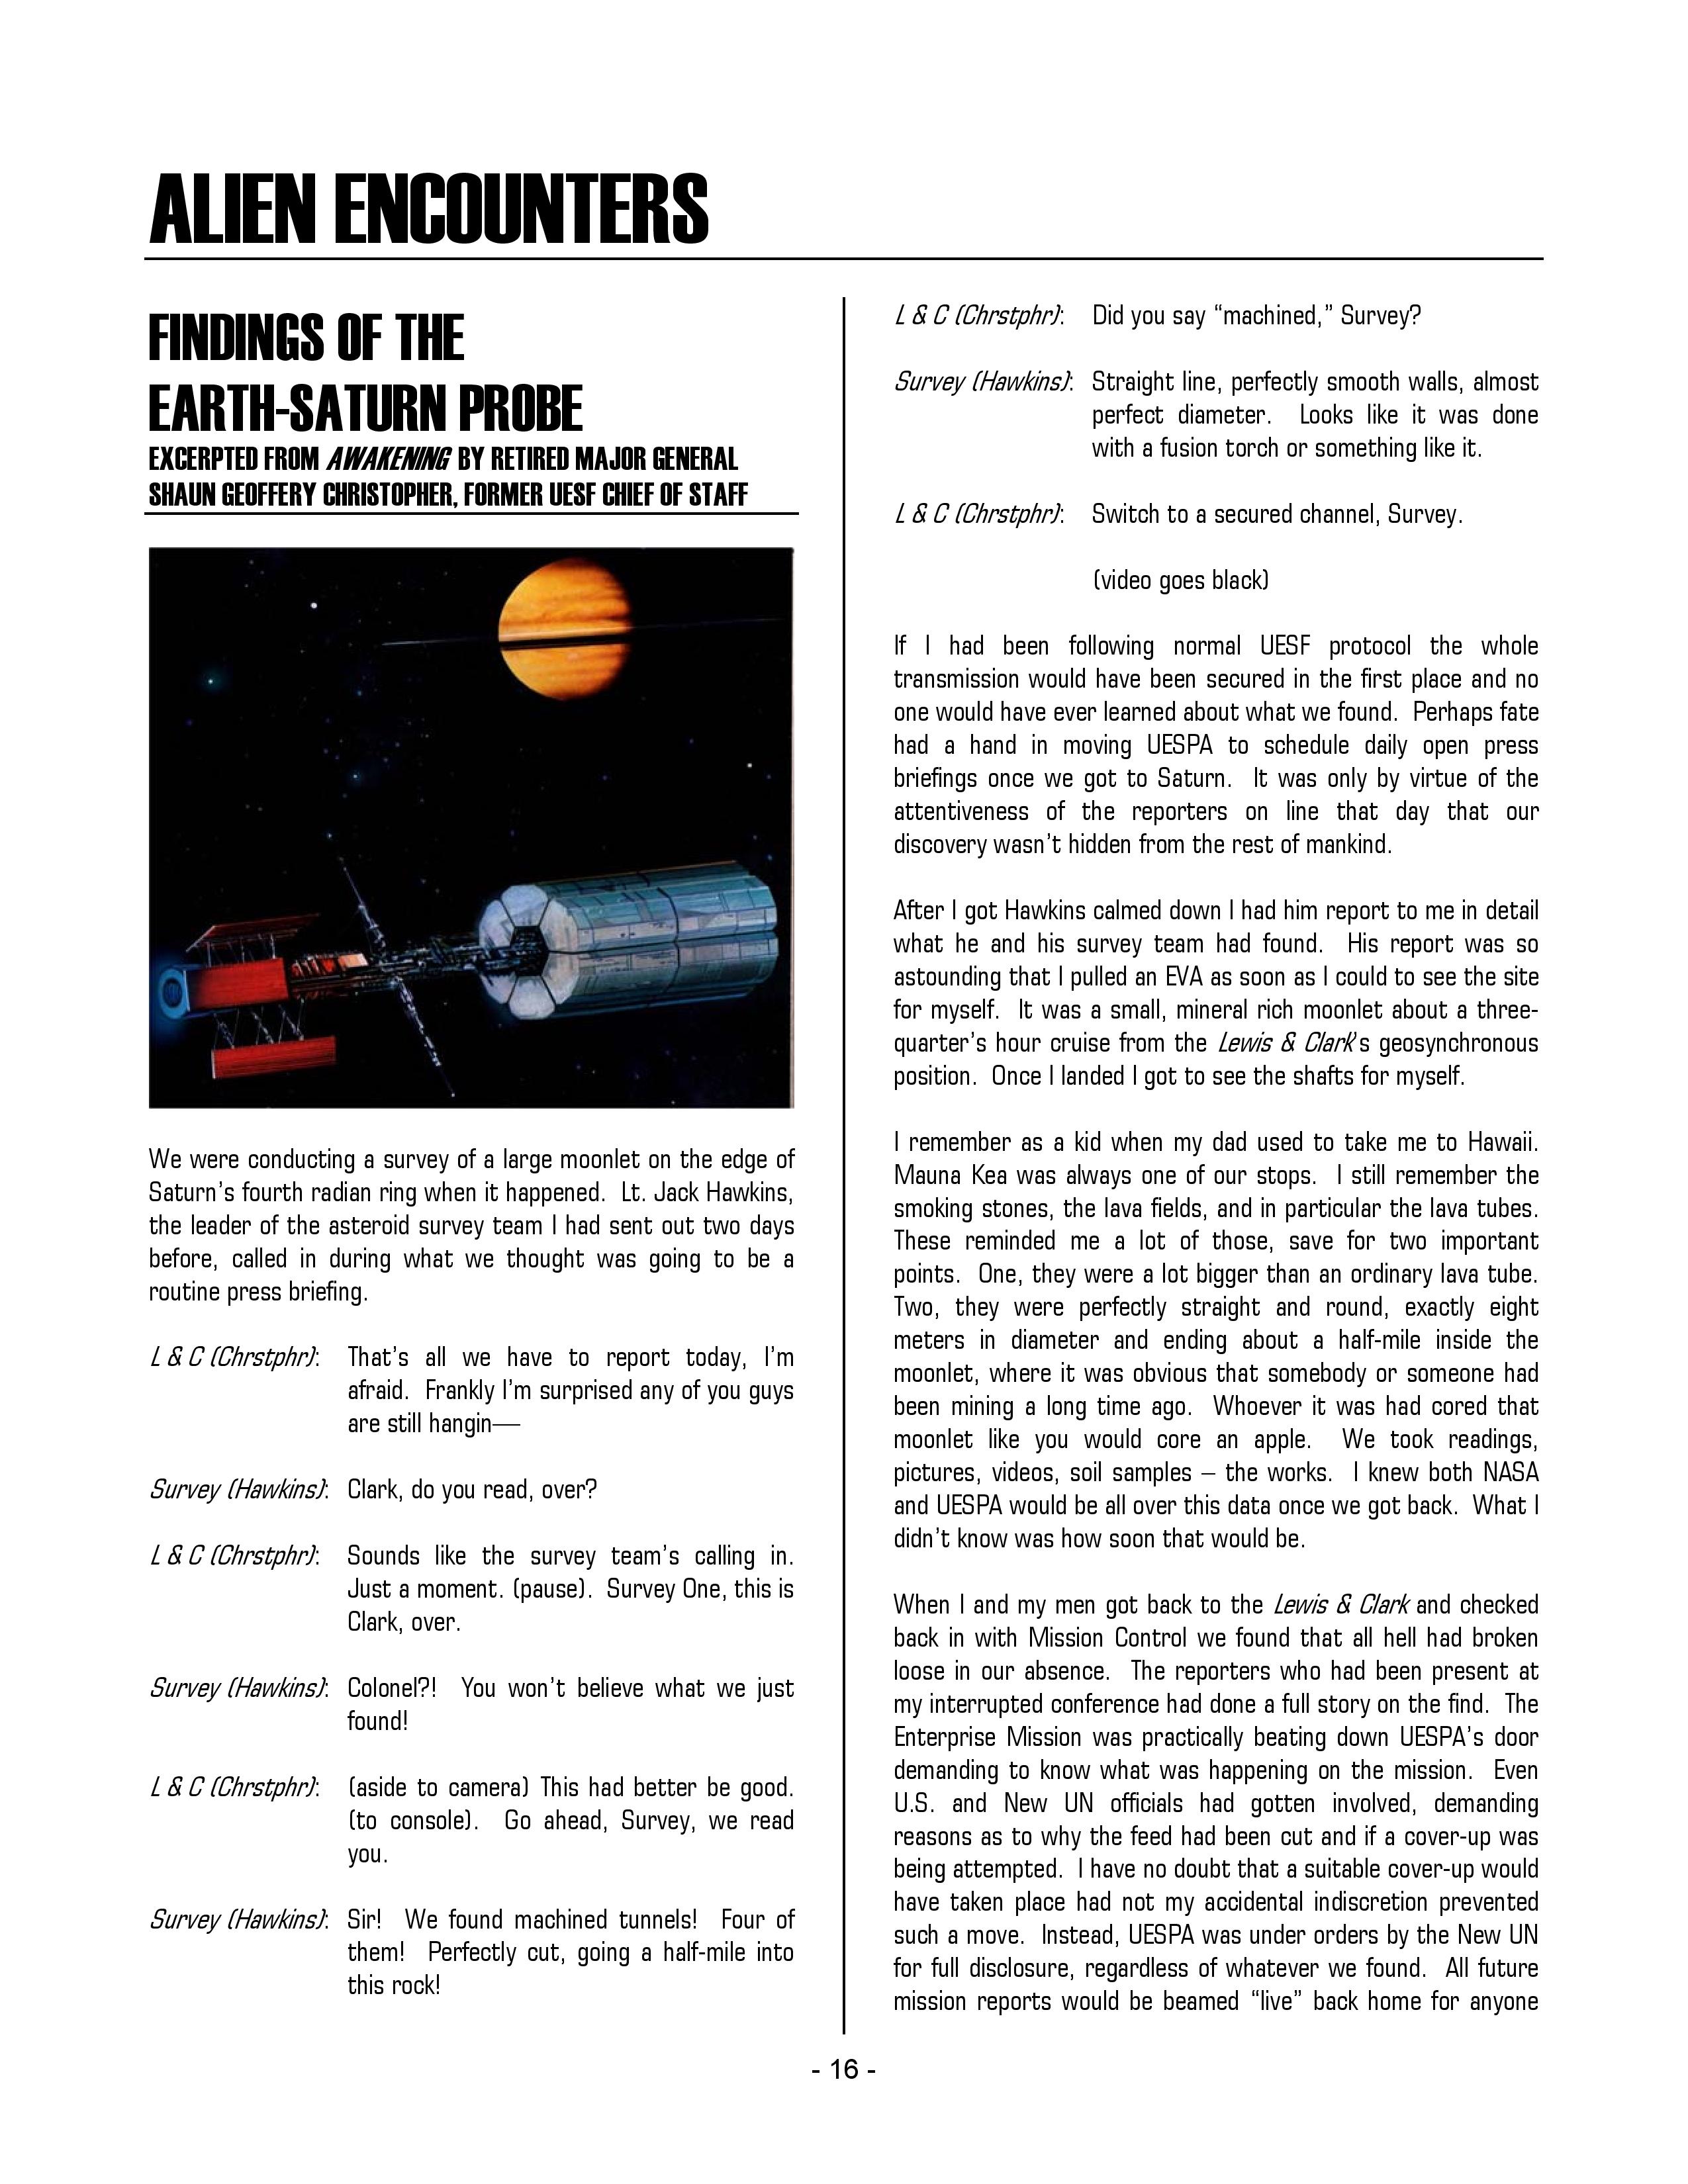 1996 33' Jupiter 31 Open Center Console - Sample Survey Report, PDF, Electrochemistry